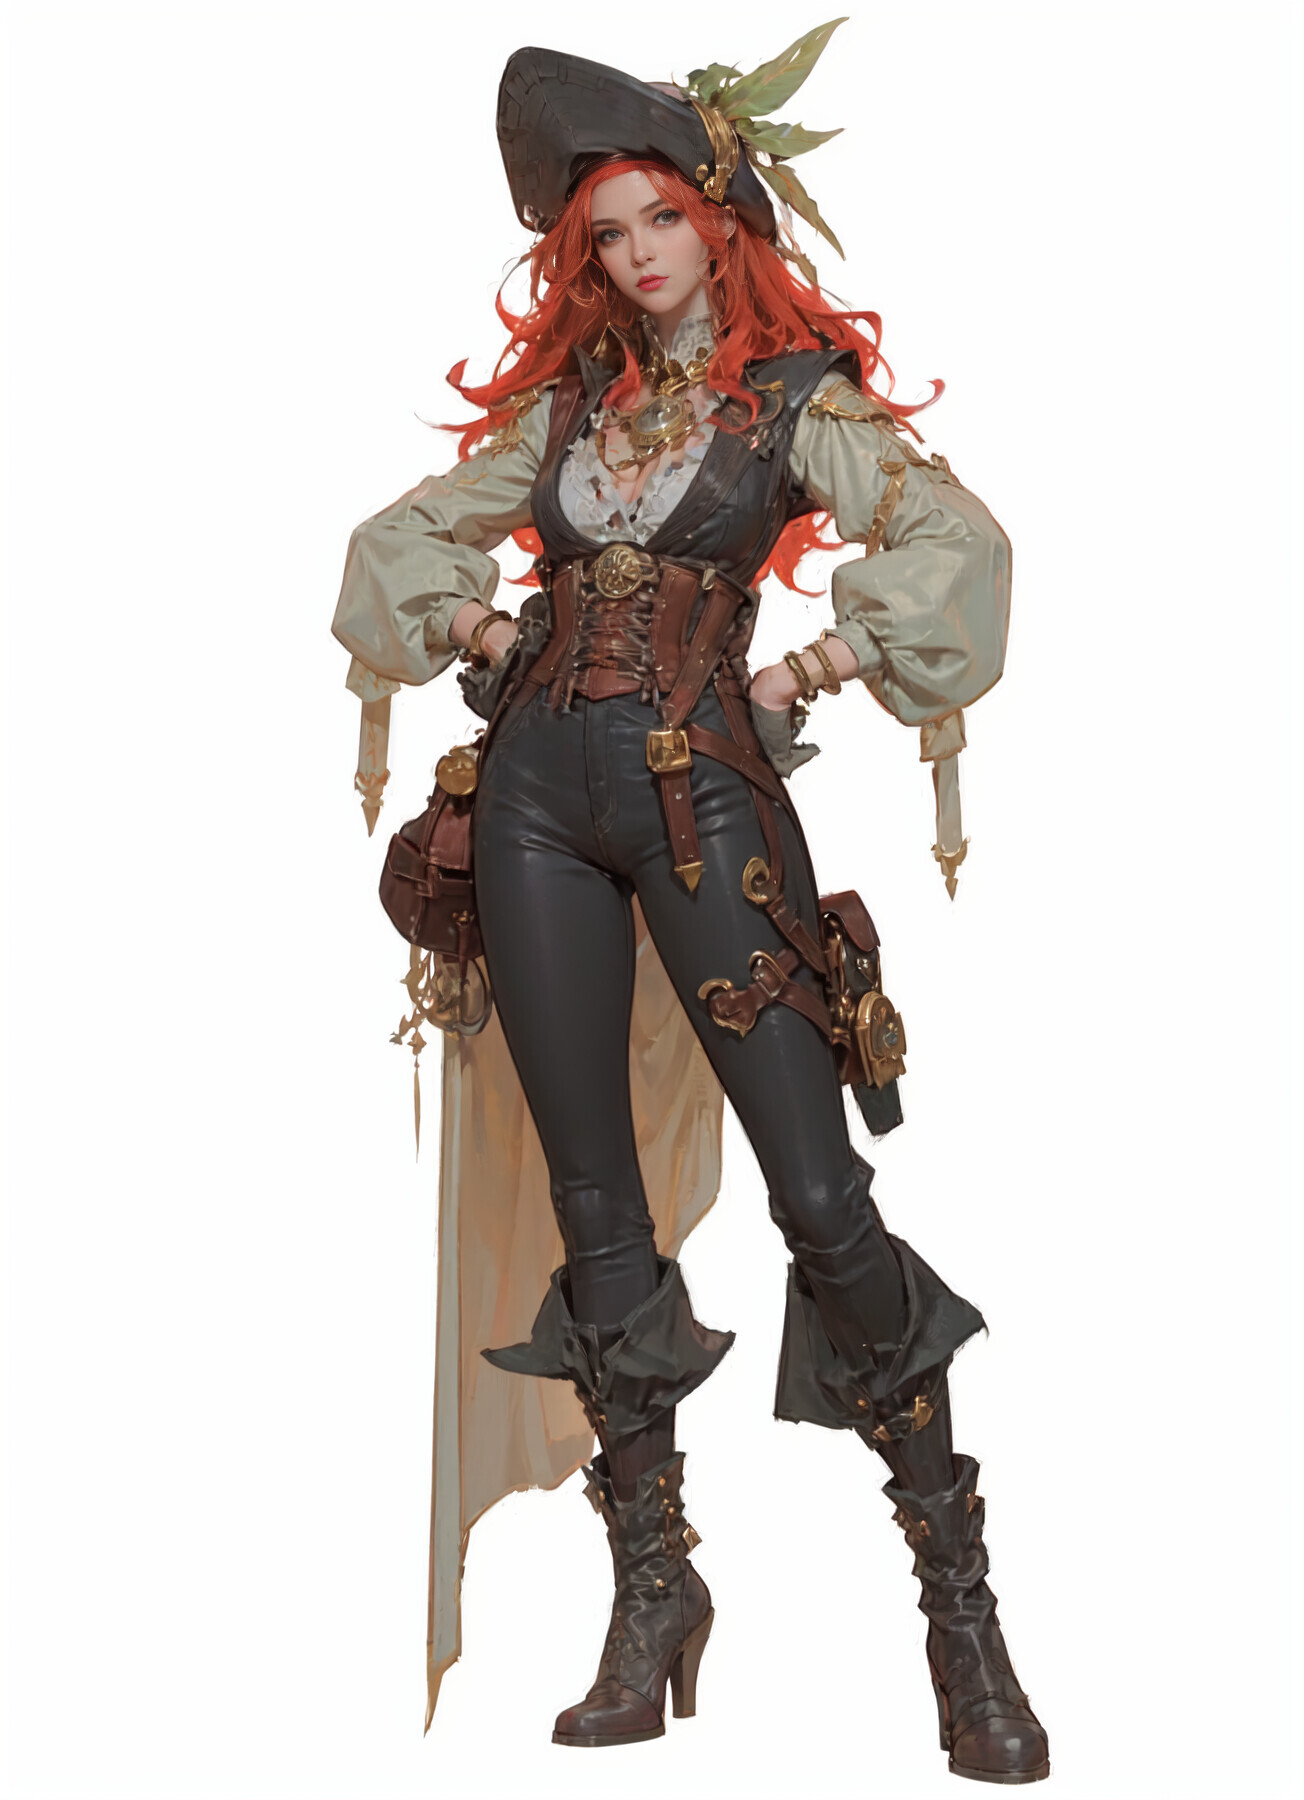 ArtStation - Female Pirate Captain